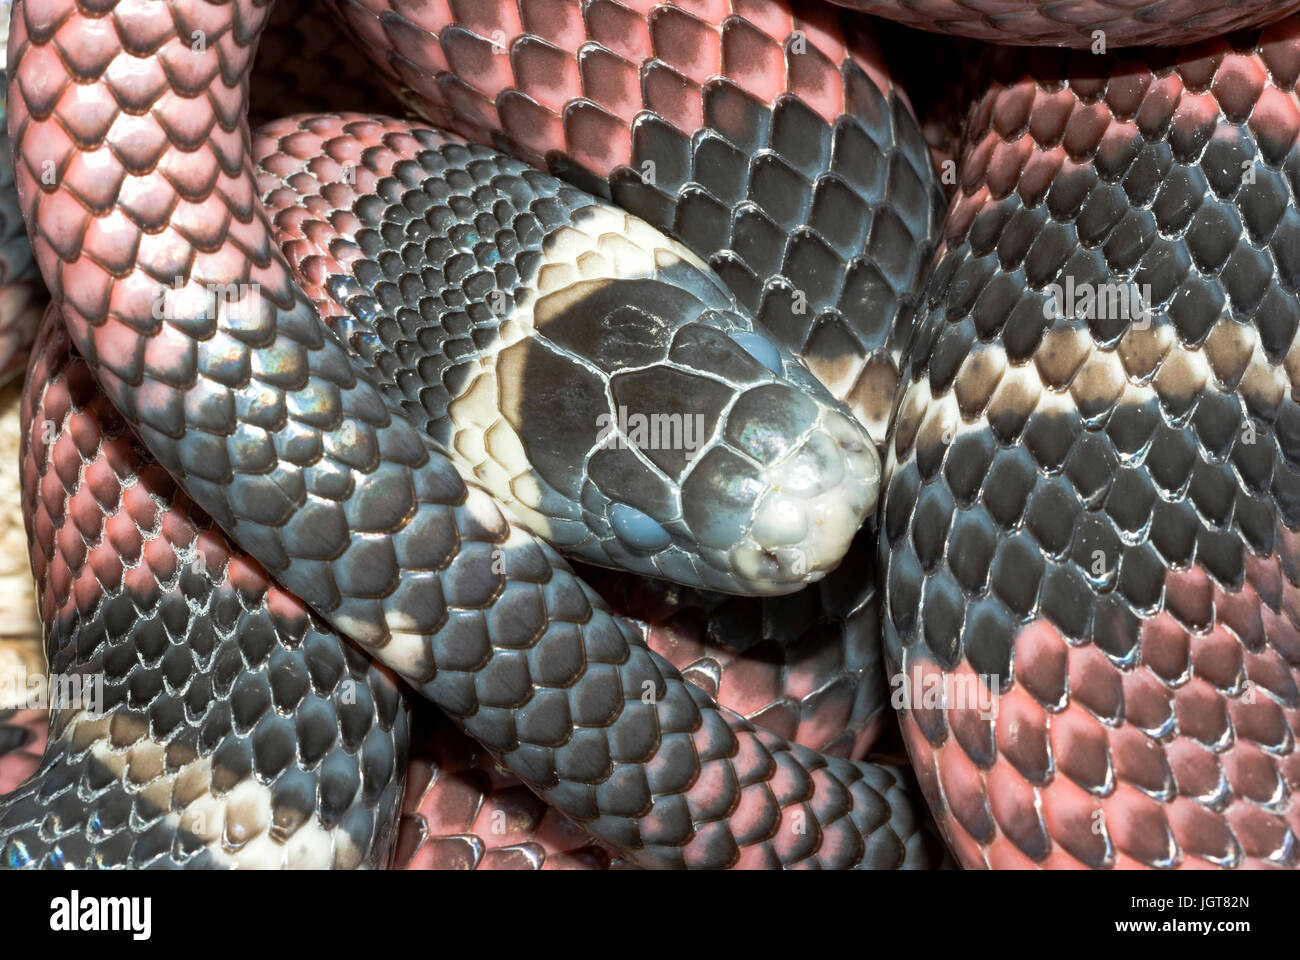 Sinaloan Milk Snake Foto de stock